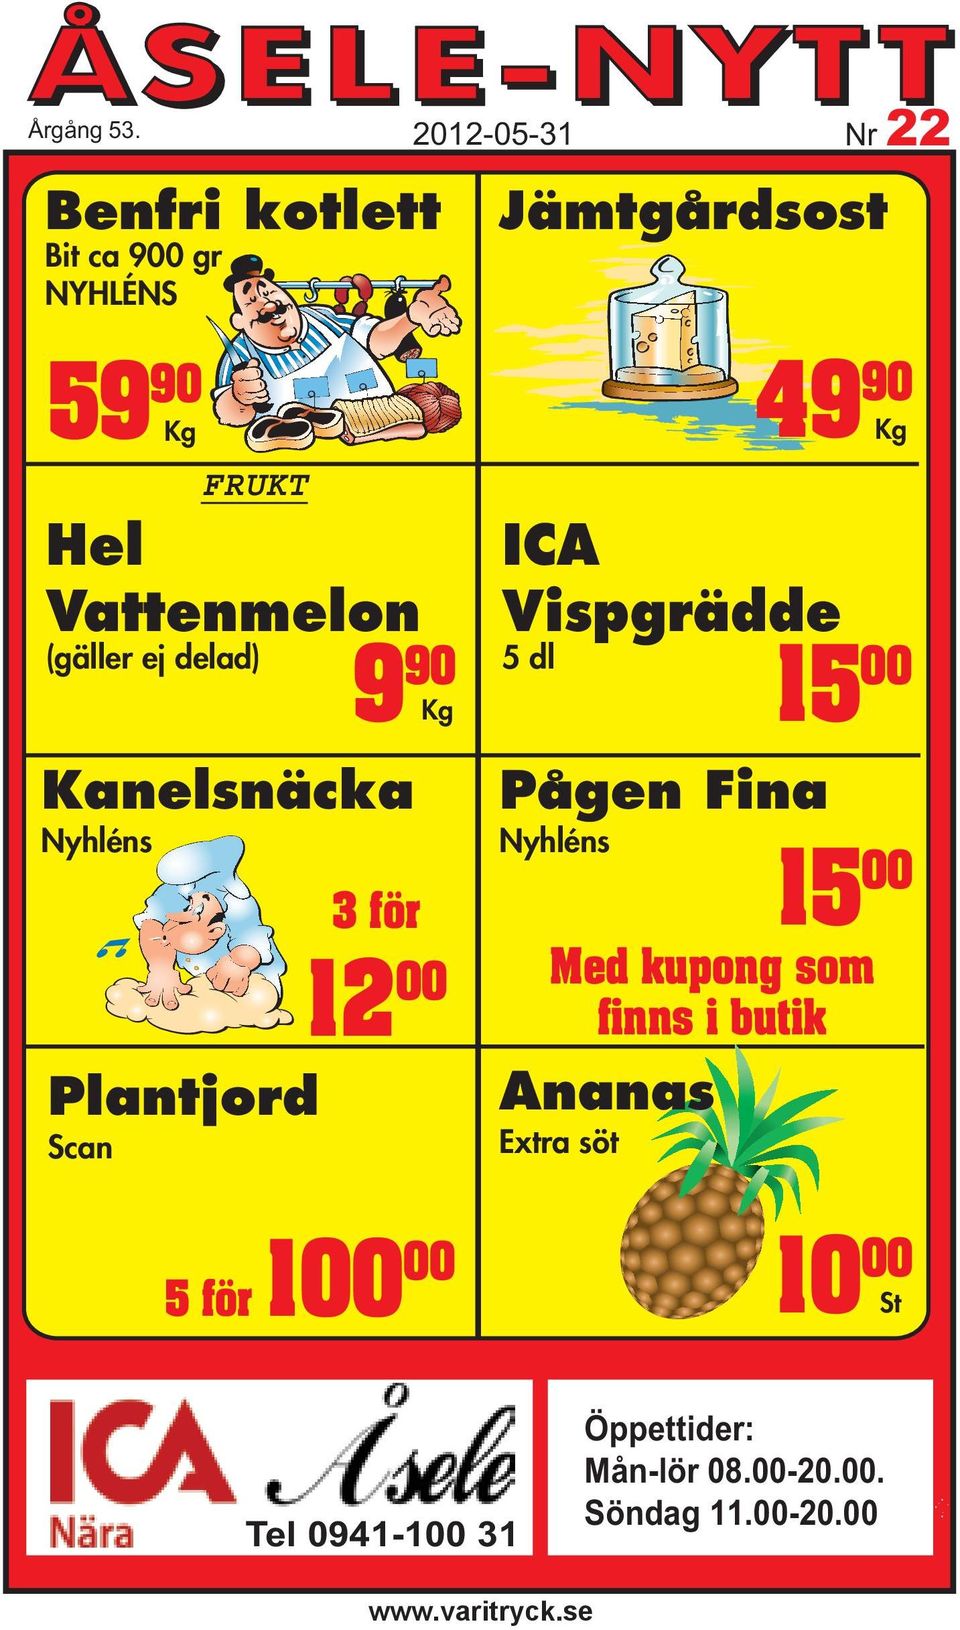 Kanelsnäcka Nyhléns 3 för 2012-05-31 Nr 22 Jämtgårdsost ICA Vispgrädde 5 dl 15 00 Pågen Fina